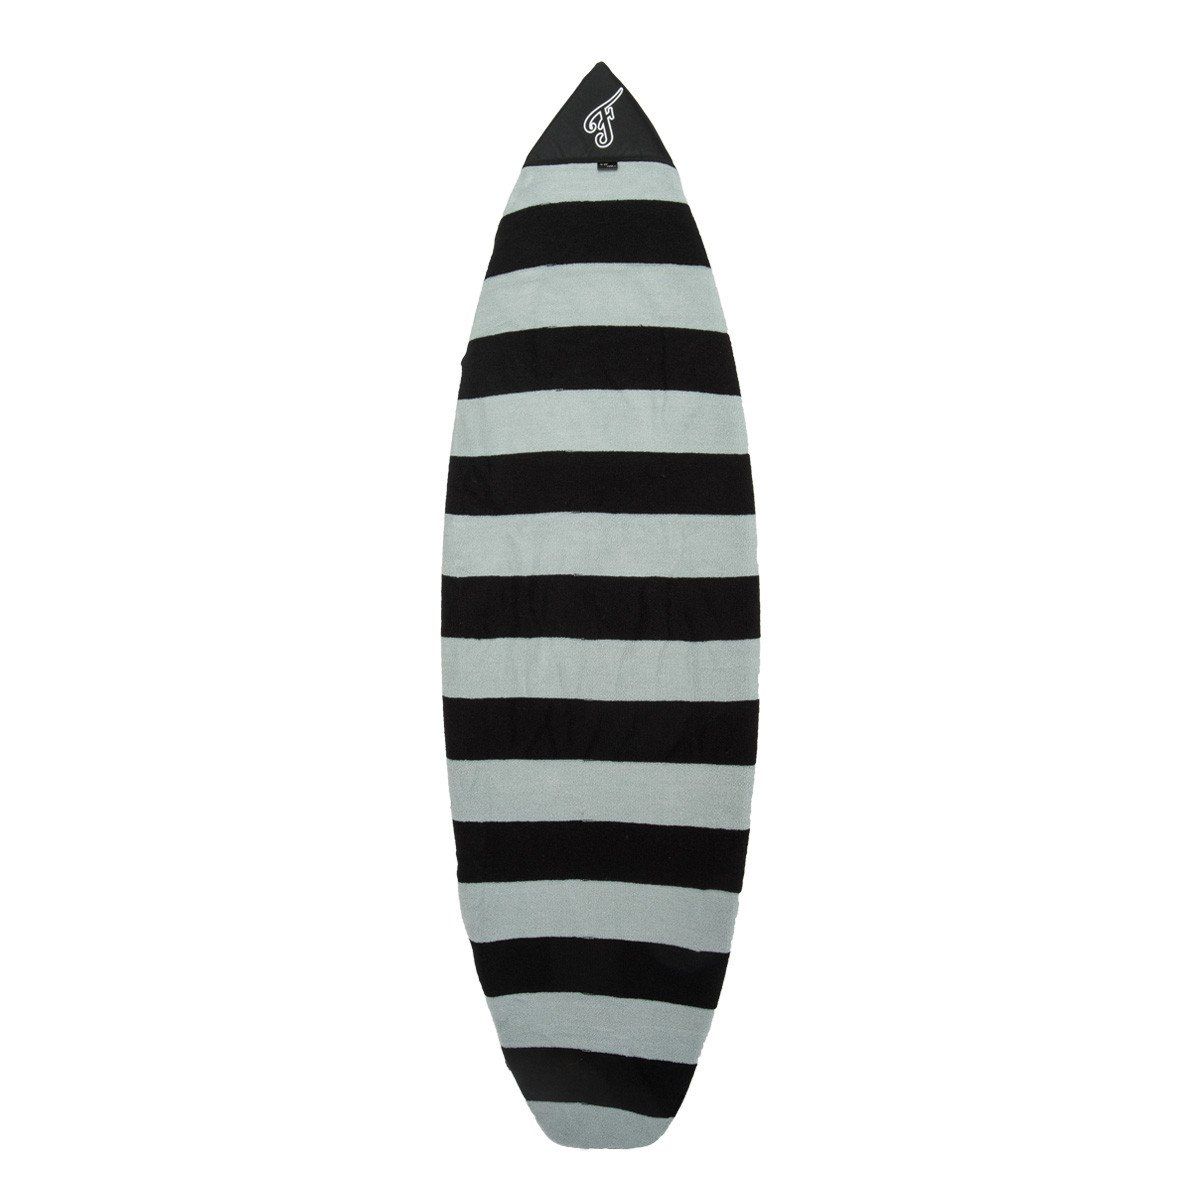 Housse de surf chaussette SOCK TIM CURRAN 6'6 SHORTBOARD BLACK/CHARCOAL